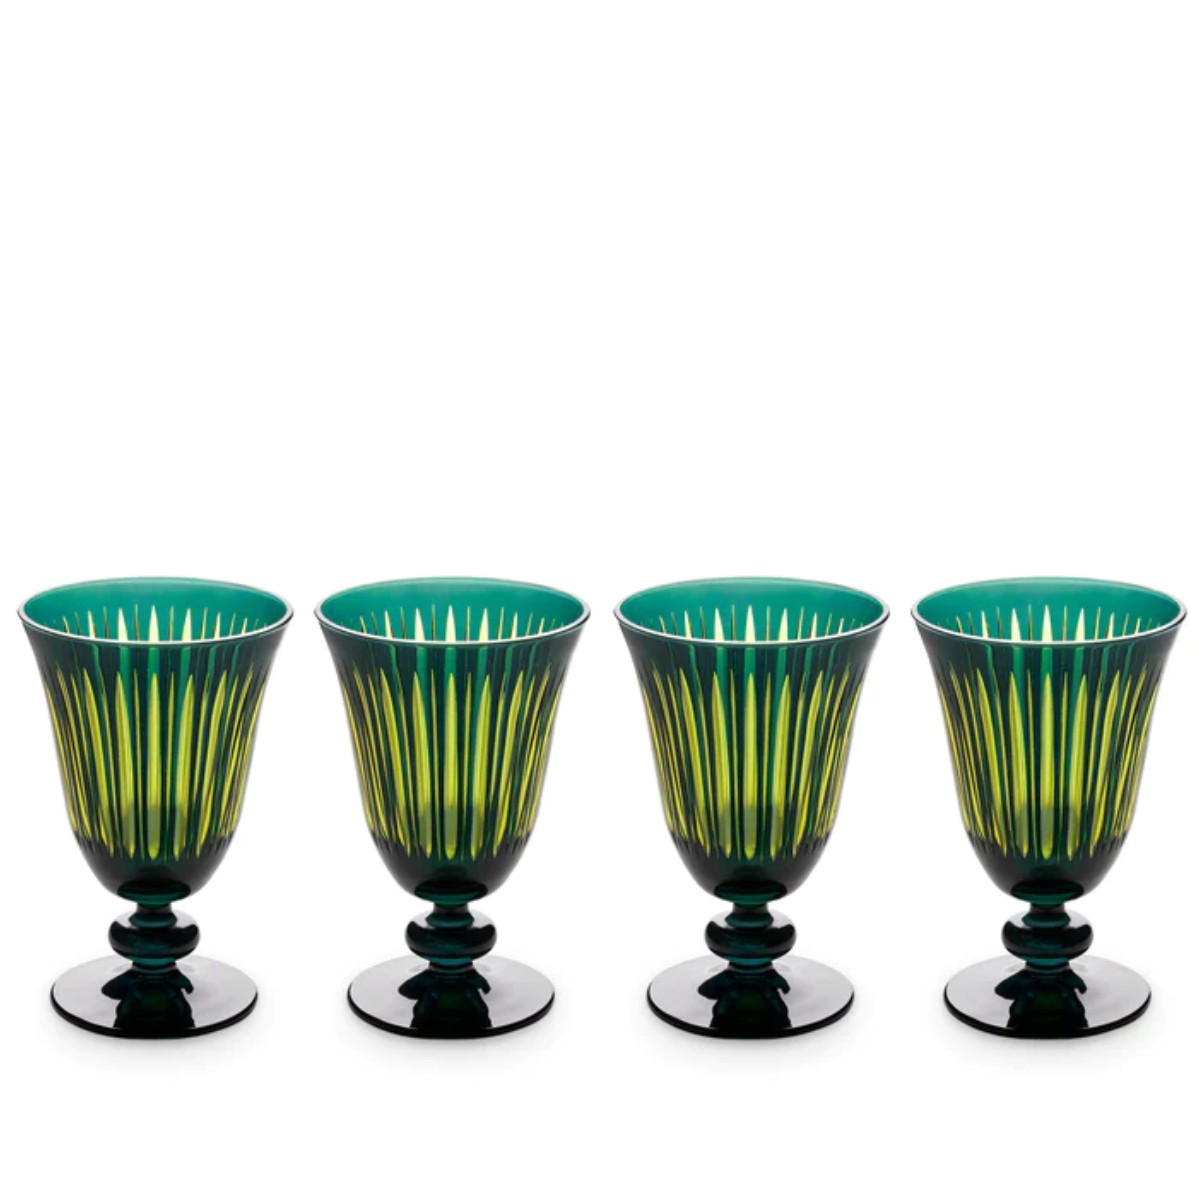 L’Objet | Prism Wine Glasses Set of 4 | Green